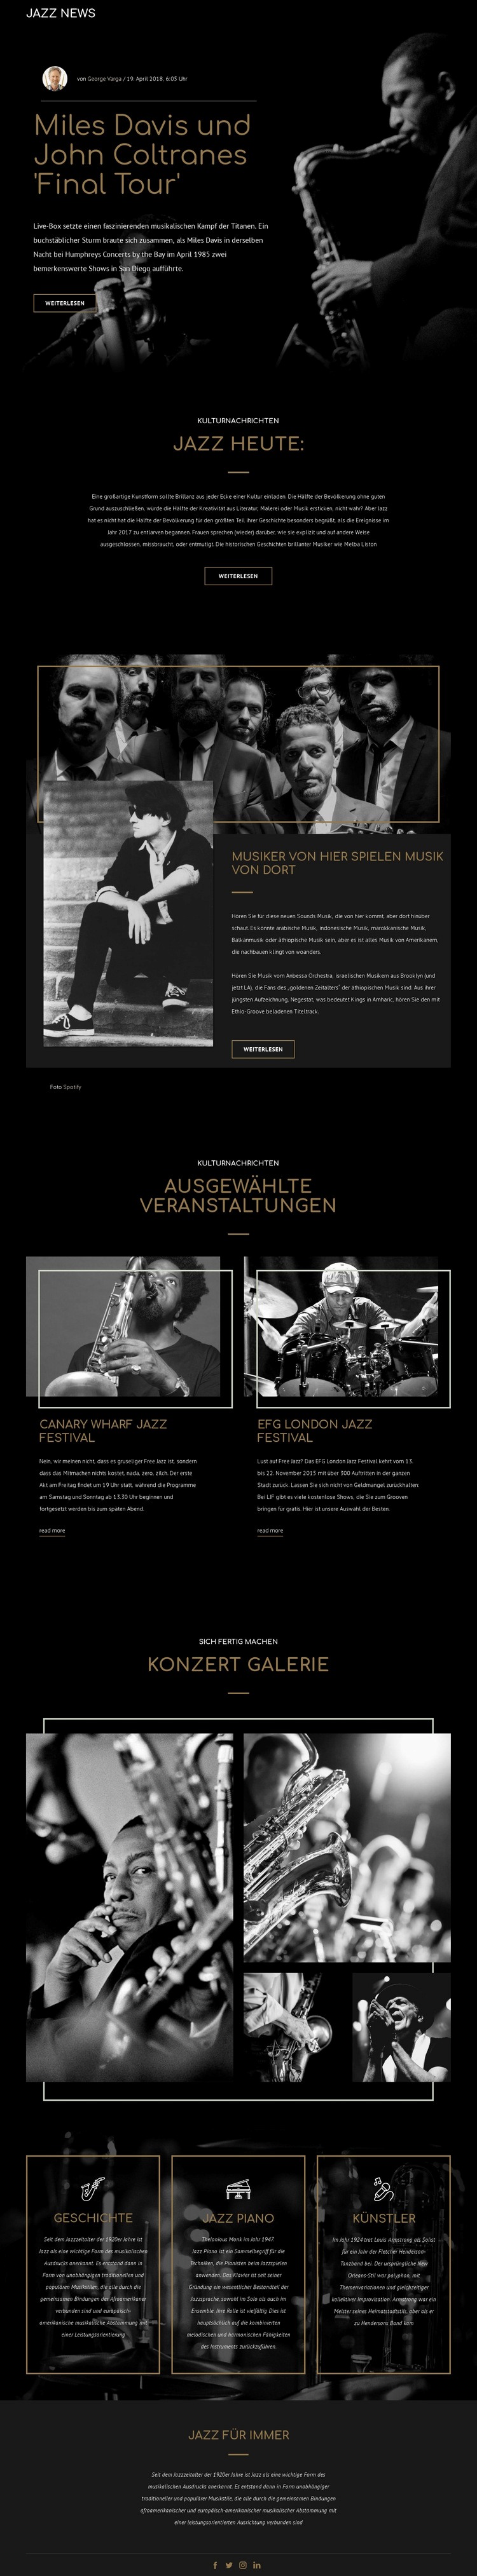 Legengs der Jazzmusik HTML5-Vorlage